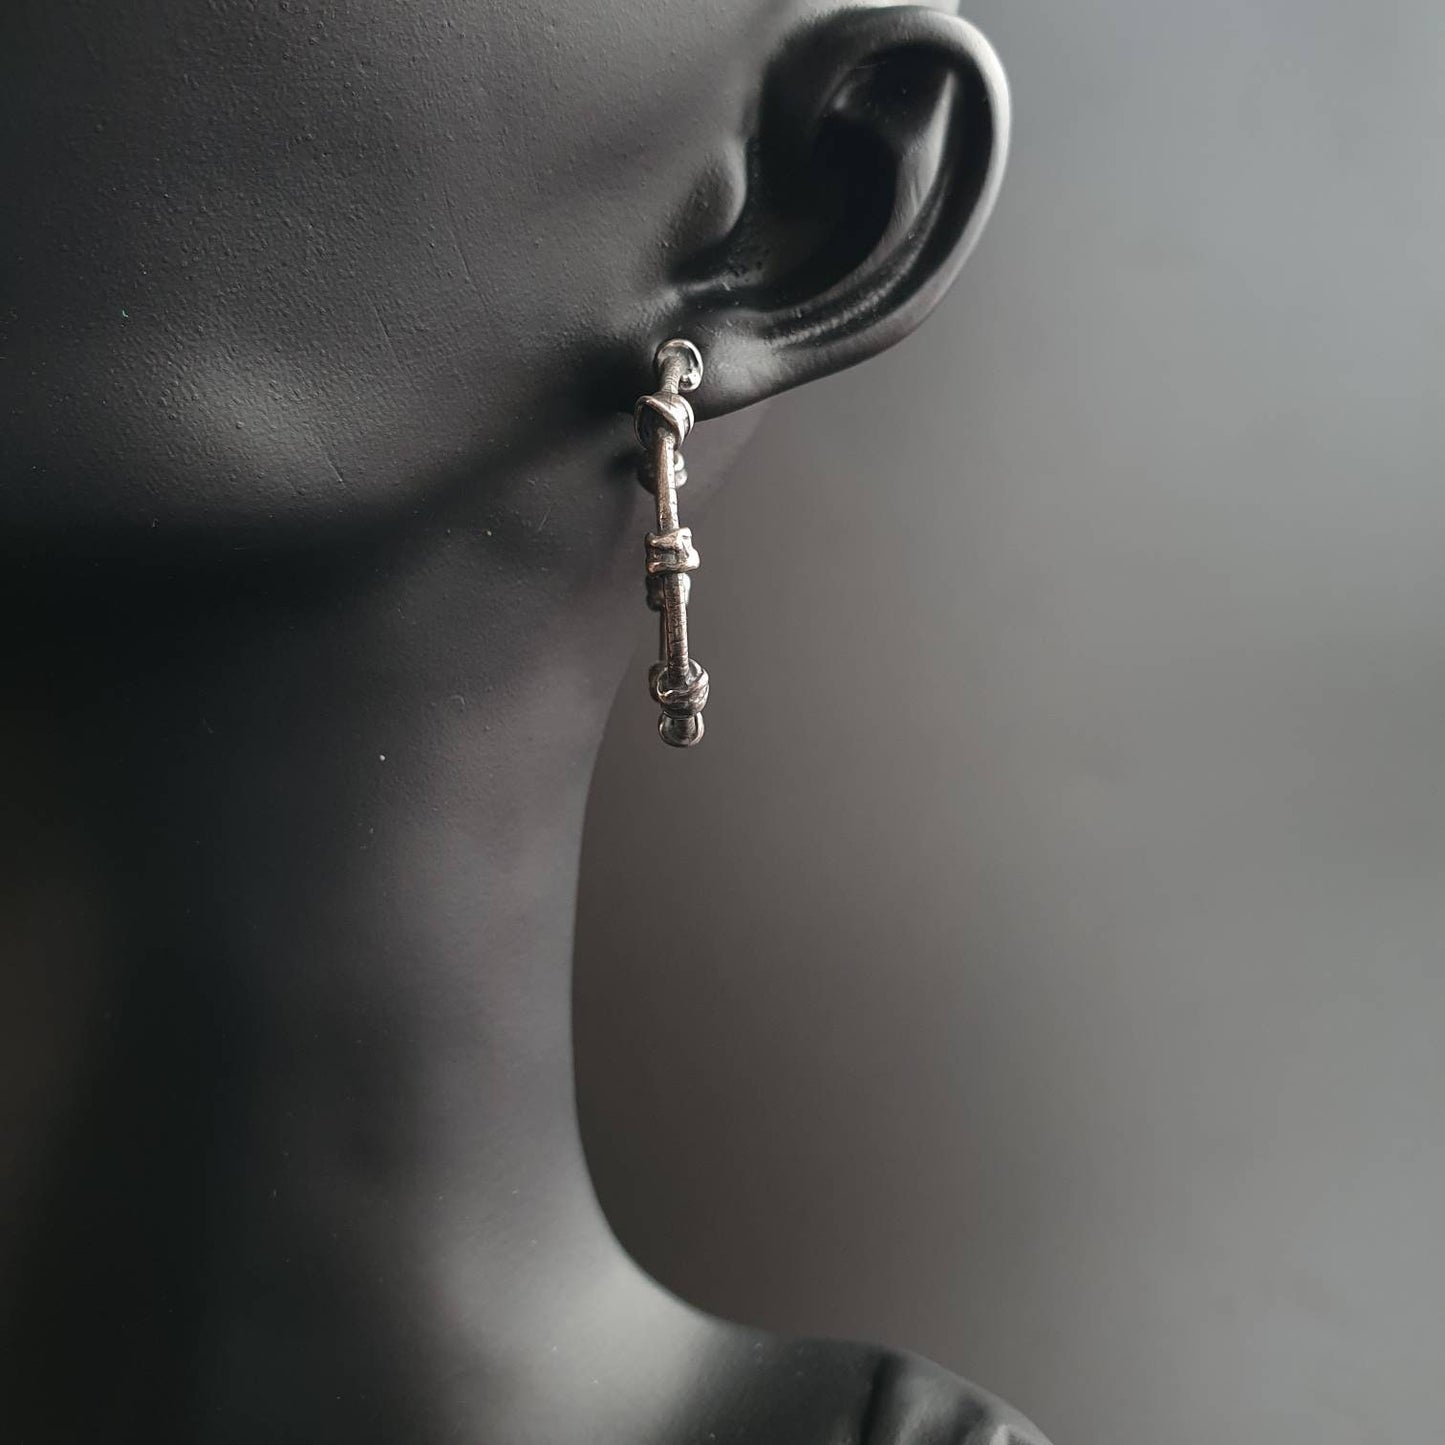 Knot hoop earrings, Round hoop earrings, dangle hoop earrings, barbed wire effect,handmade sterling silver earrings, gift ideas,